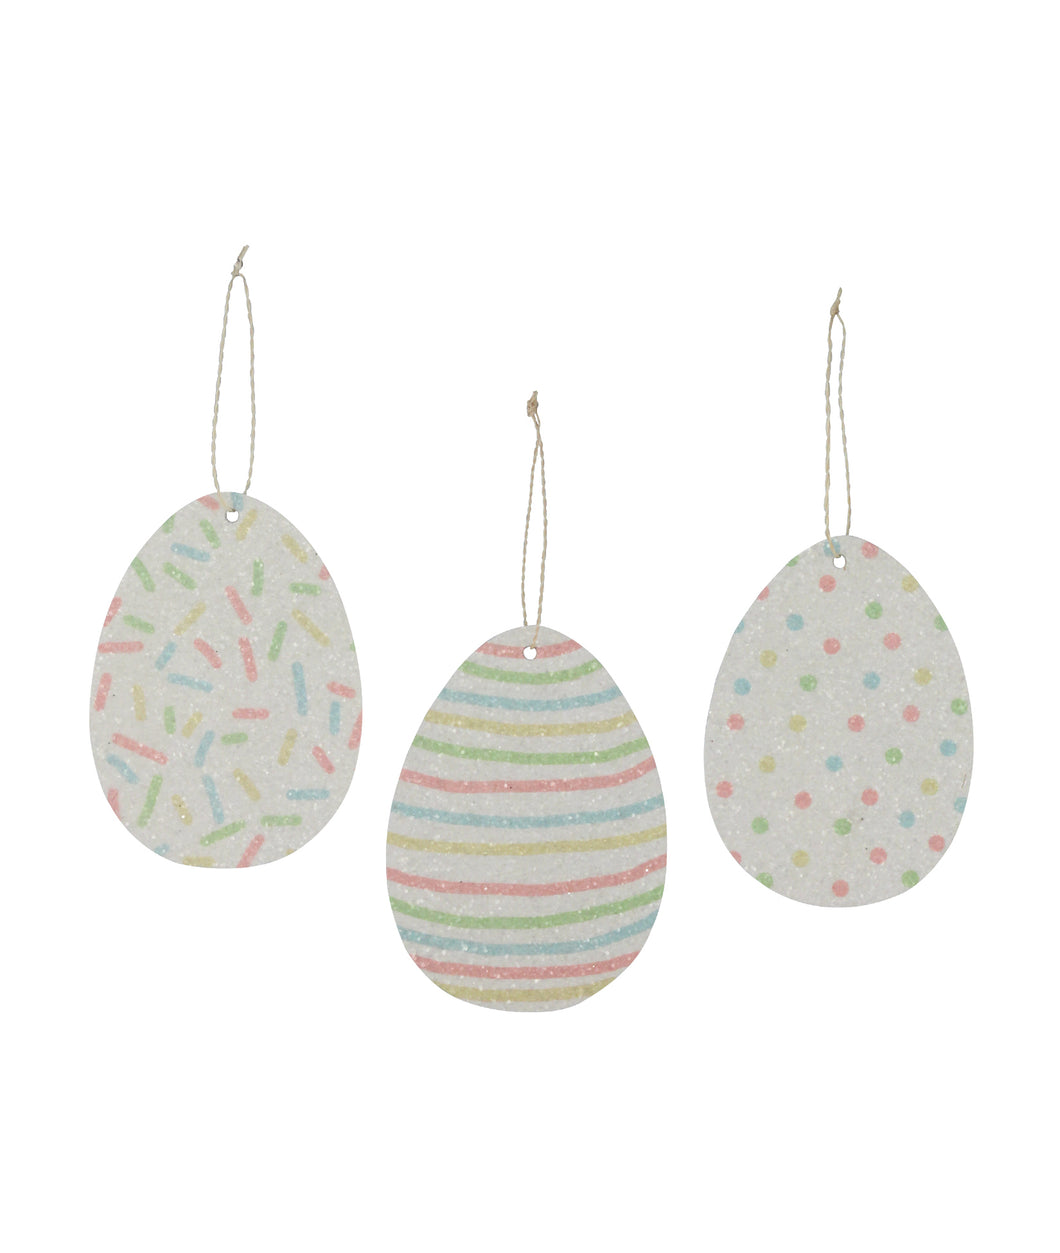 TL0224 - Confetti Pressed Paper Egg Ornament (4782243610690)